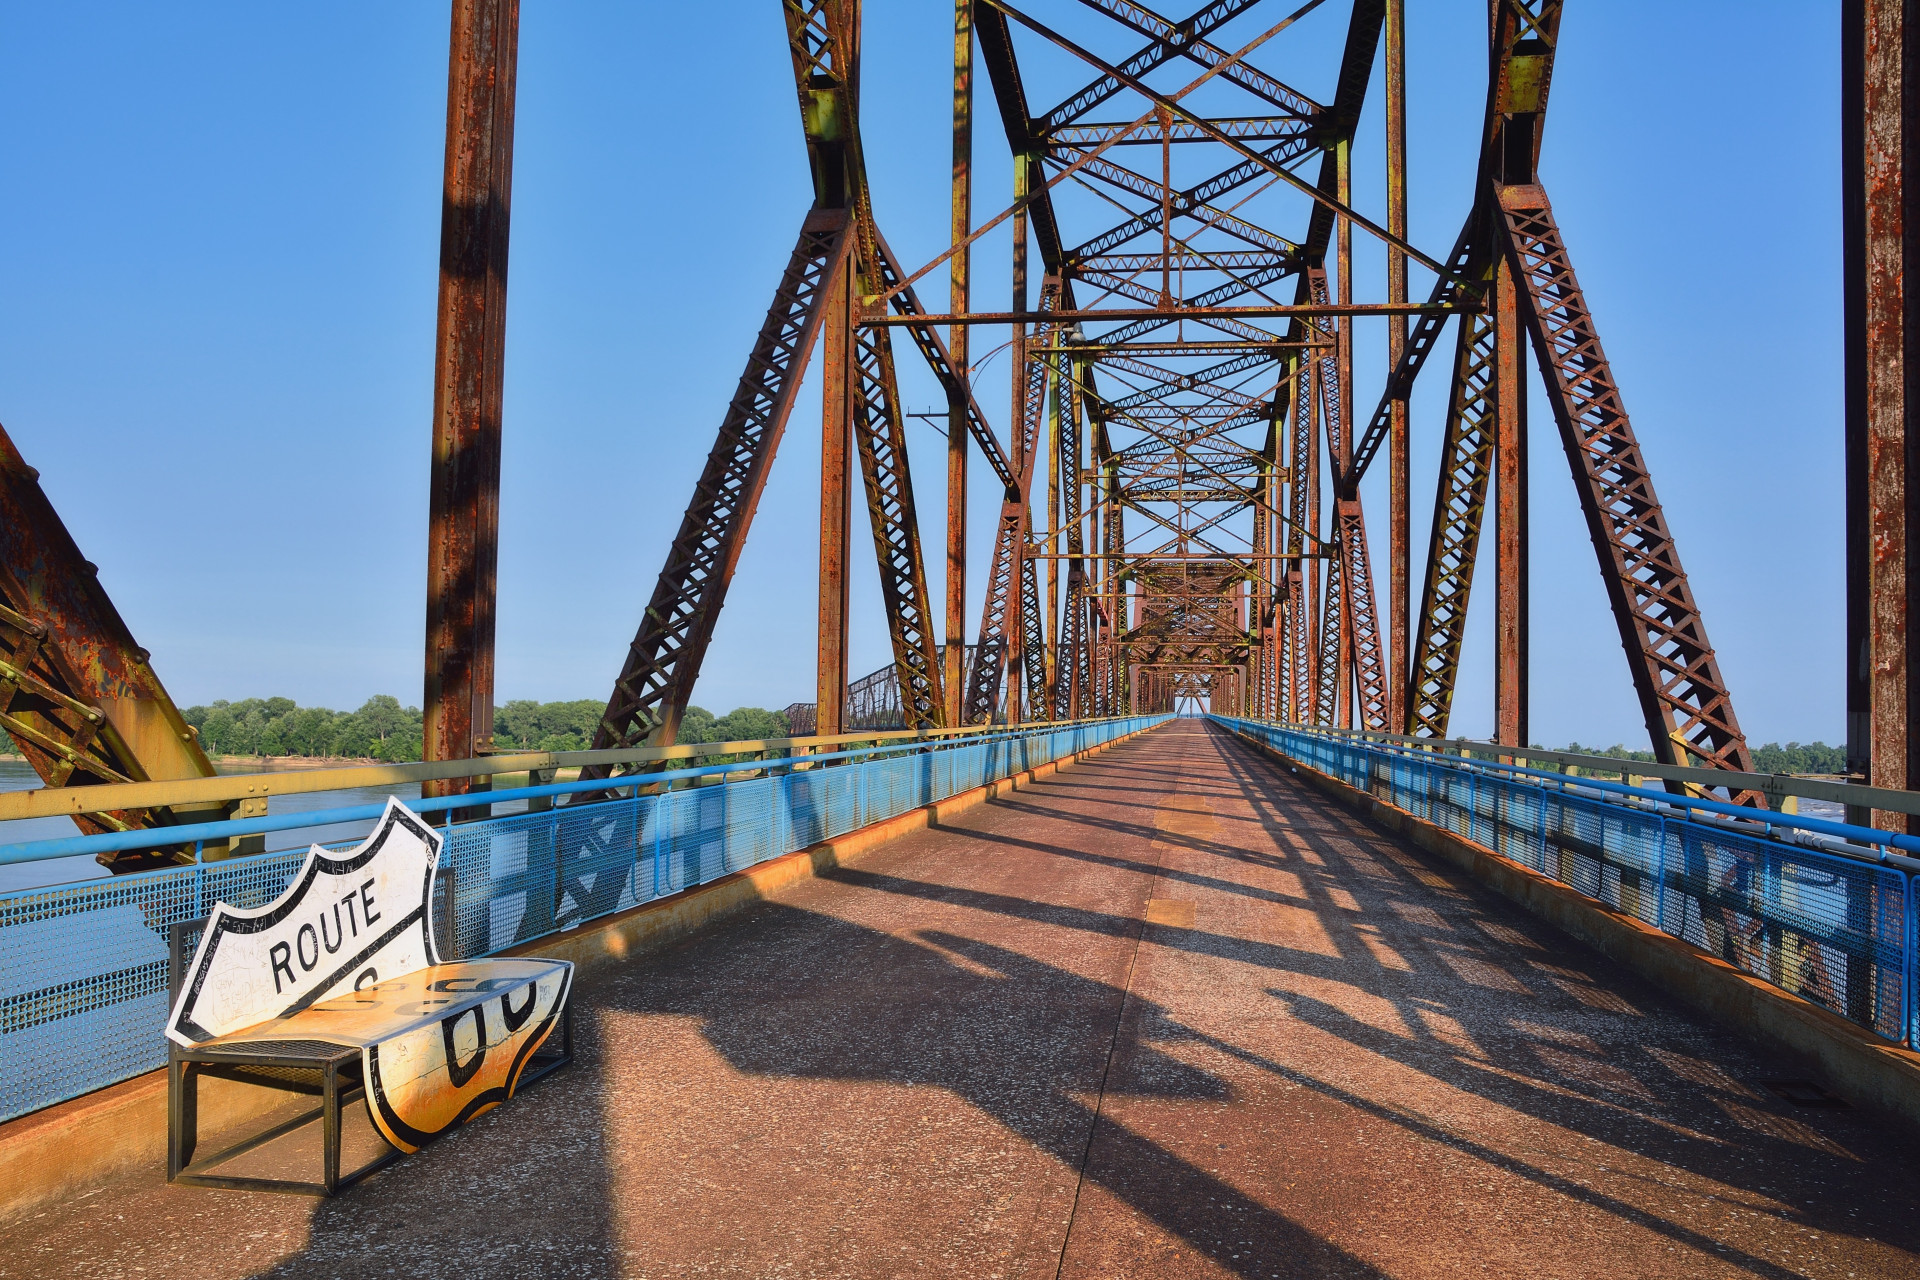 The landmark Chain of Rocks bridge on the Mississippi river, near Granite City.